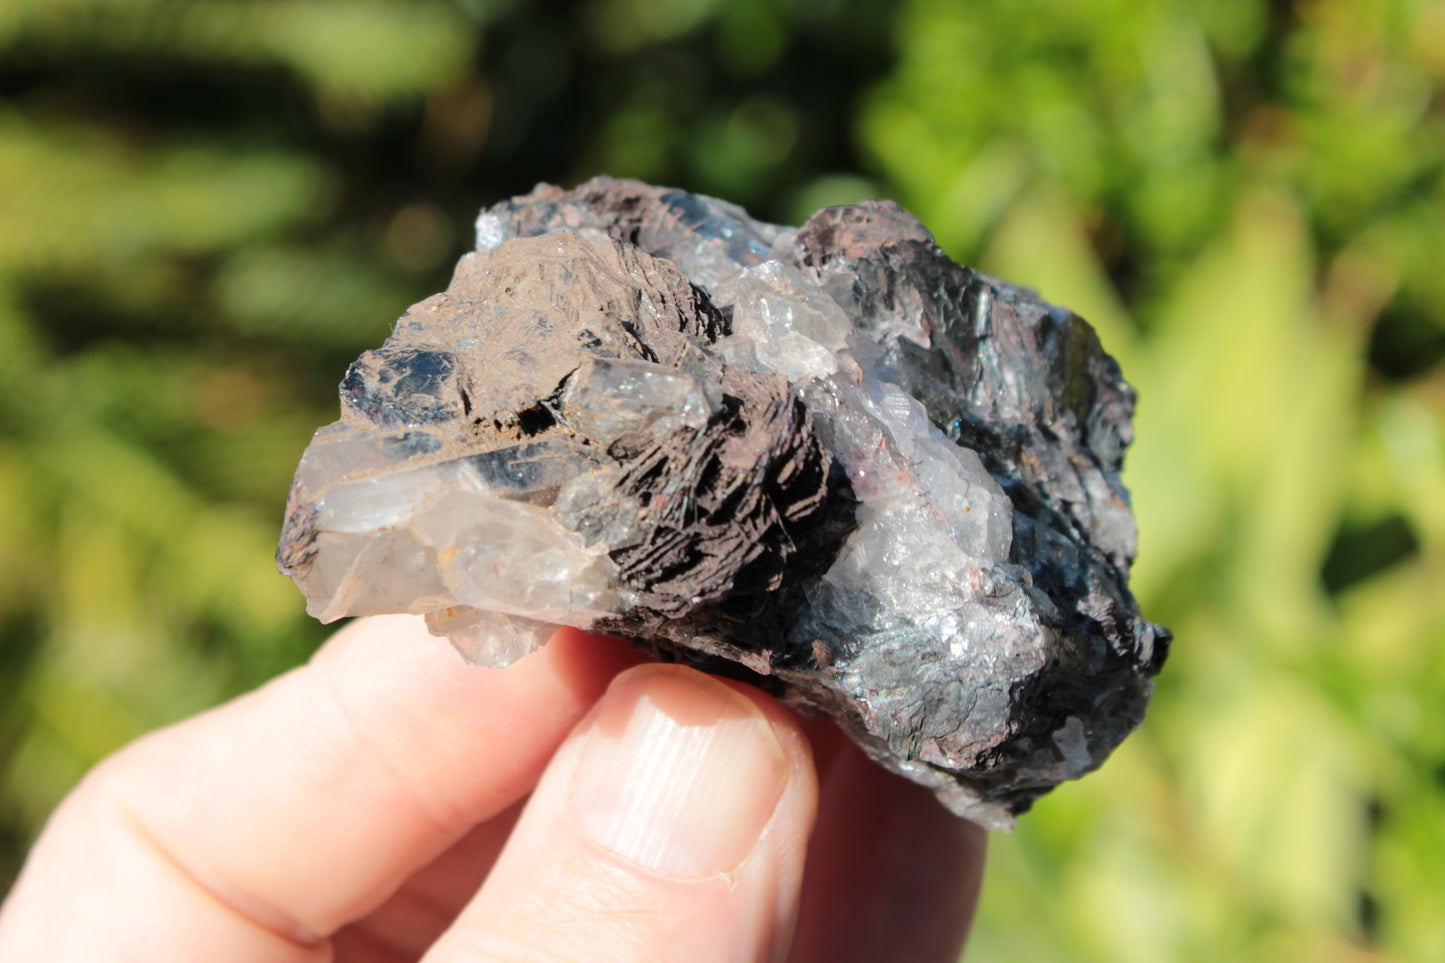 Hematite, Speculartite, Quartz and Rose Quartz mineral 181g